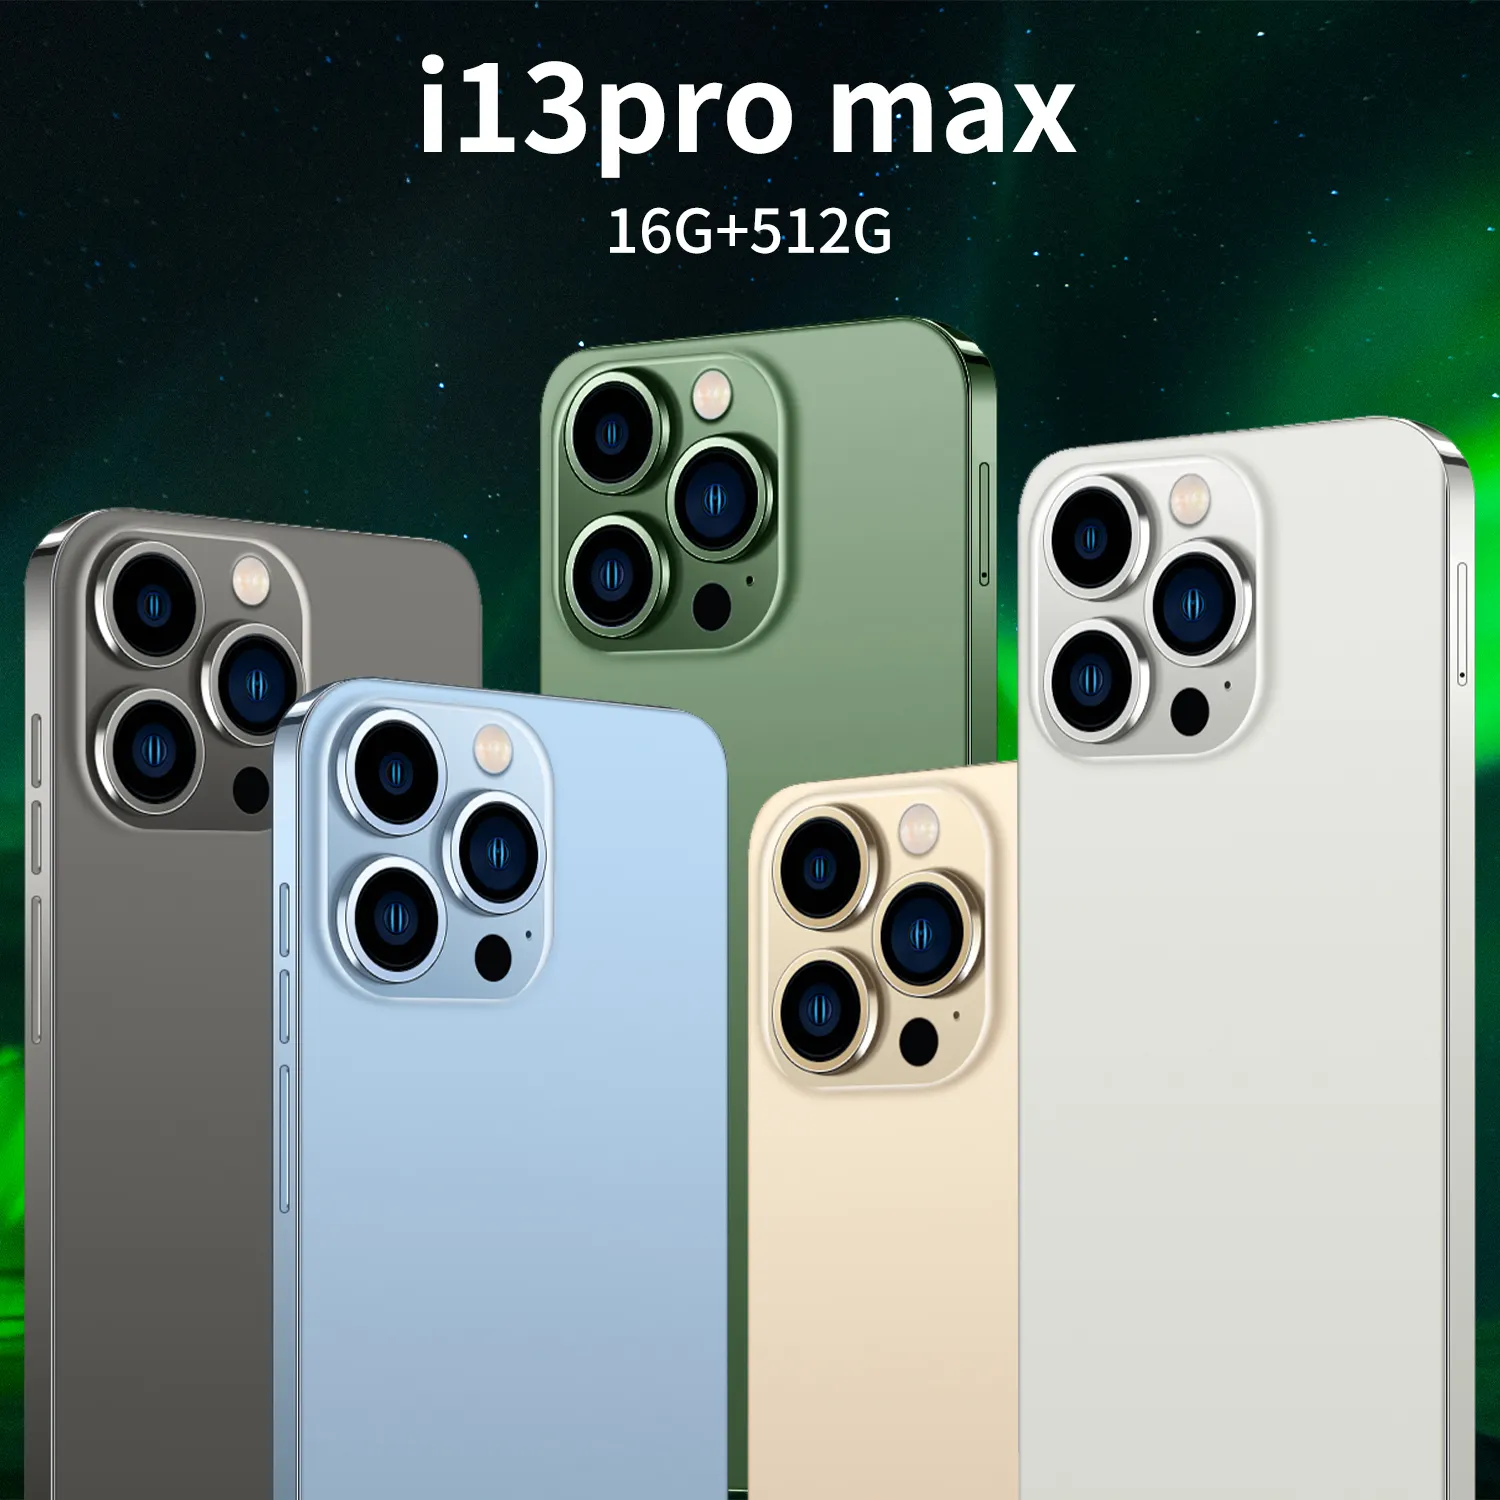 ขายส่งเซลล์ Quad Core ราคาต่ำสมาร์ท I13 Pro Max โทรศัพท์ล่าสุดกล้อง Hd ที่ดีที่สุดใหม่ Sq โทรศัพท์มือถือของ2022